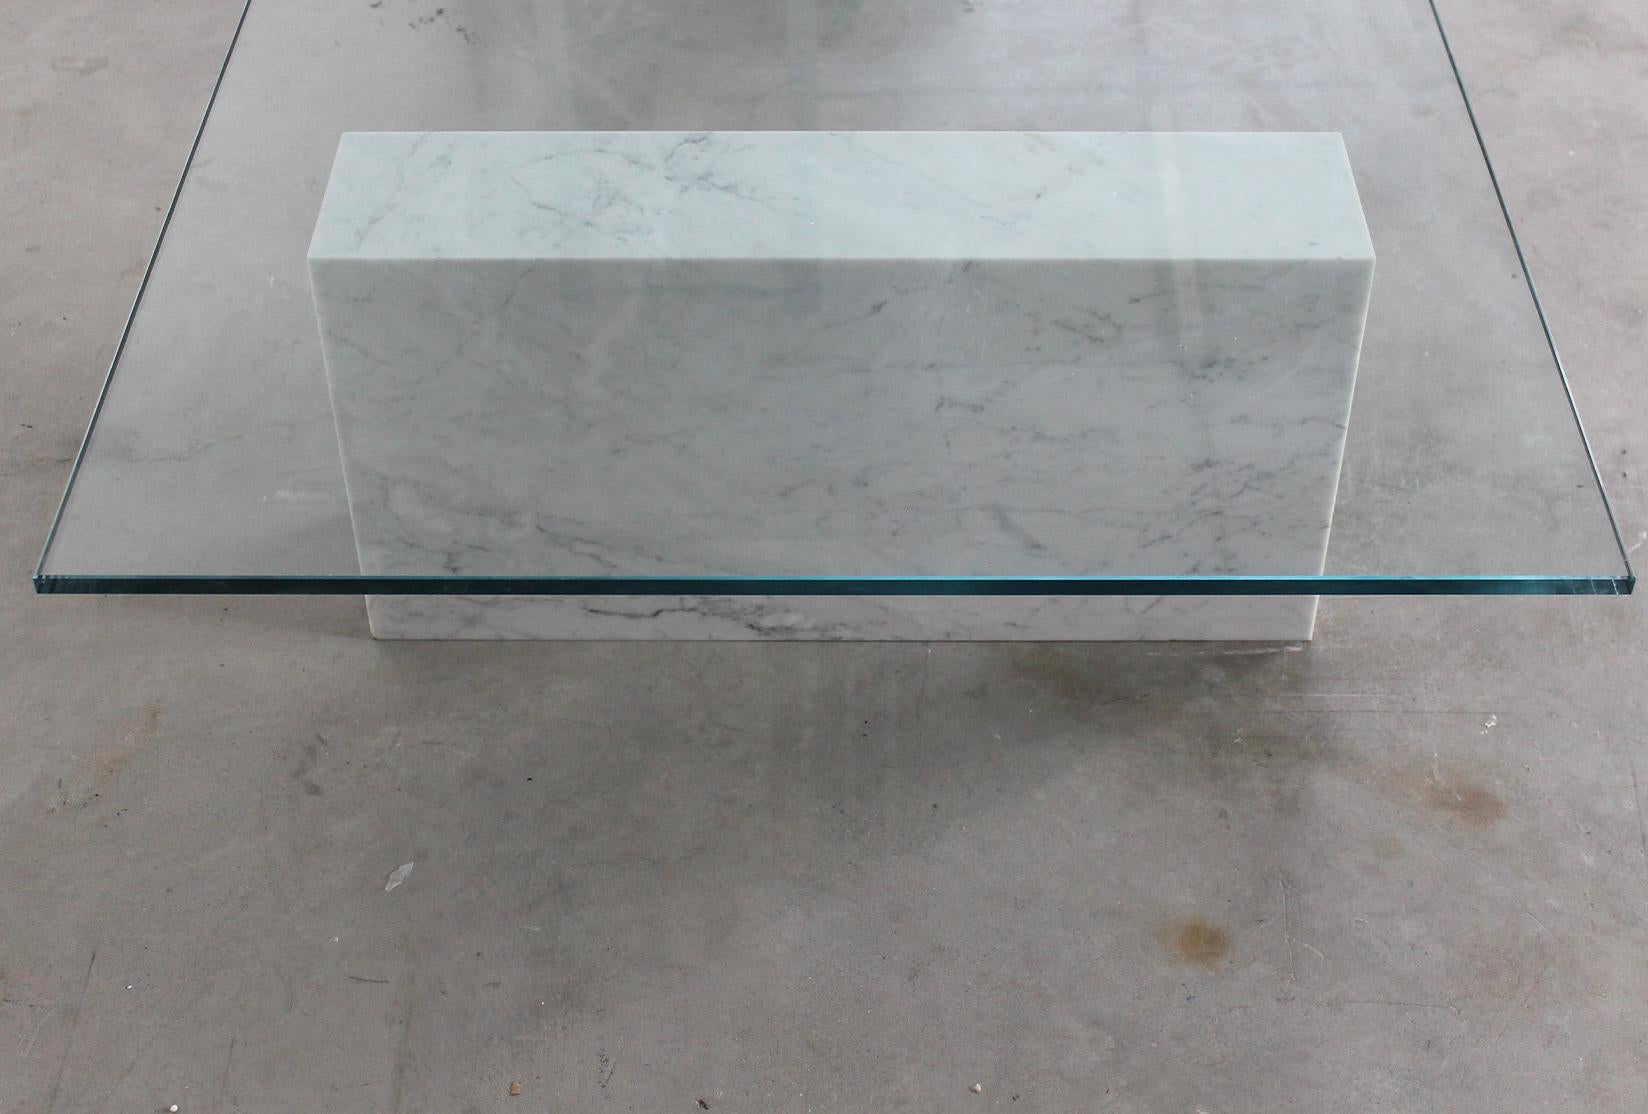 Massimo Vignelli Kono Table in Carrara Marble and Copper by Casigliani 1980s For Sale 3